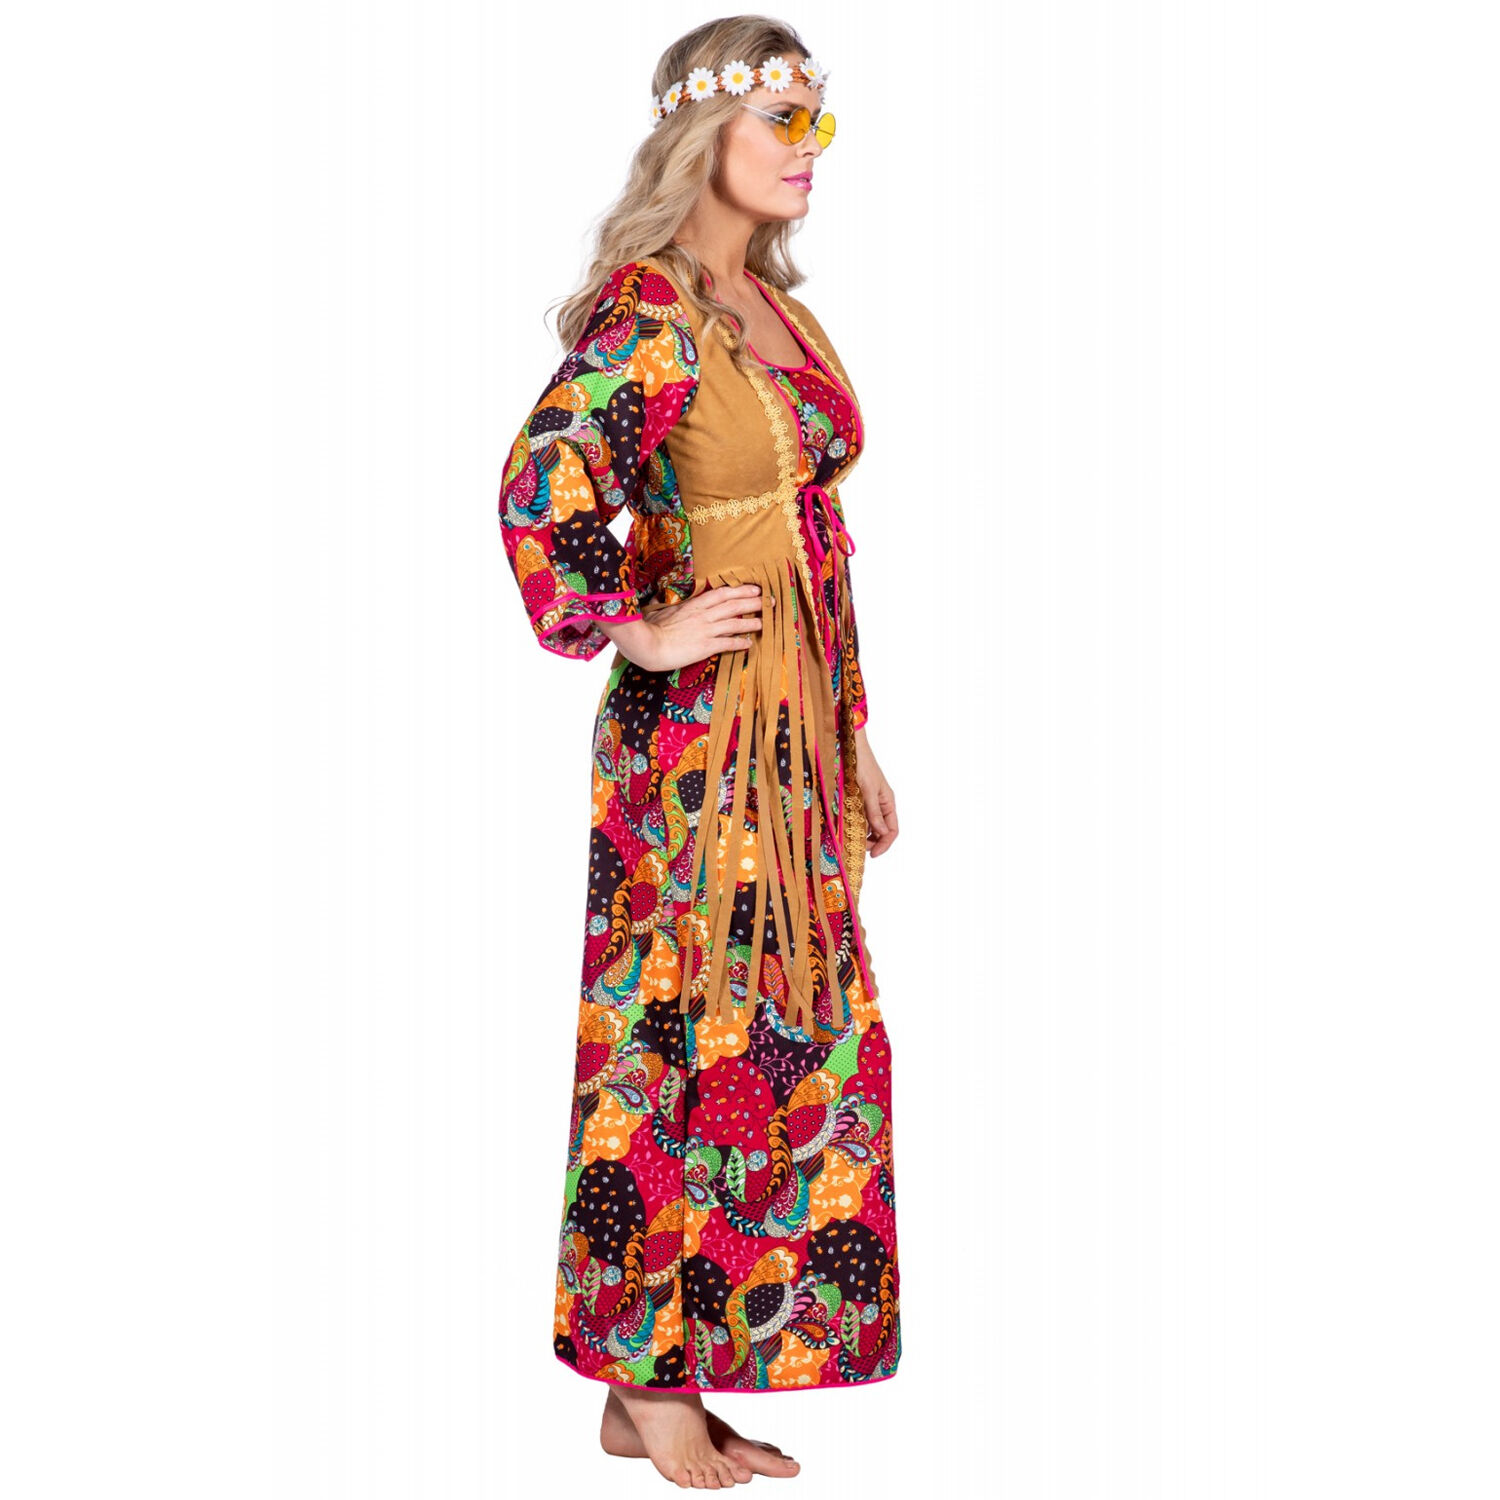 Damen-Kostm Hippie Kleid bunt, Gr. 36 Bild 2